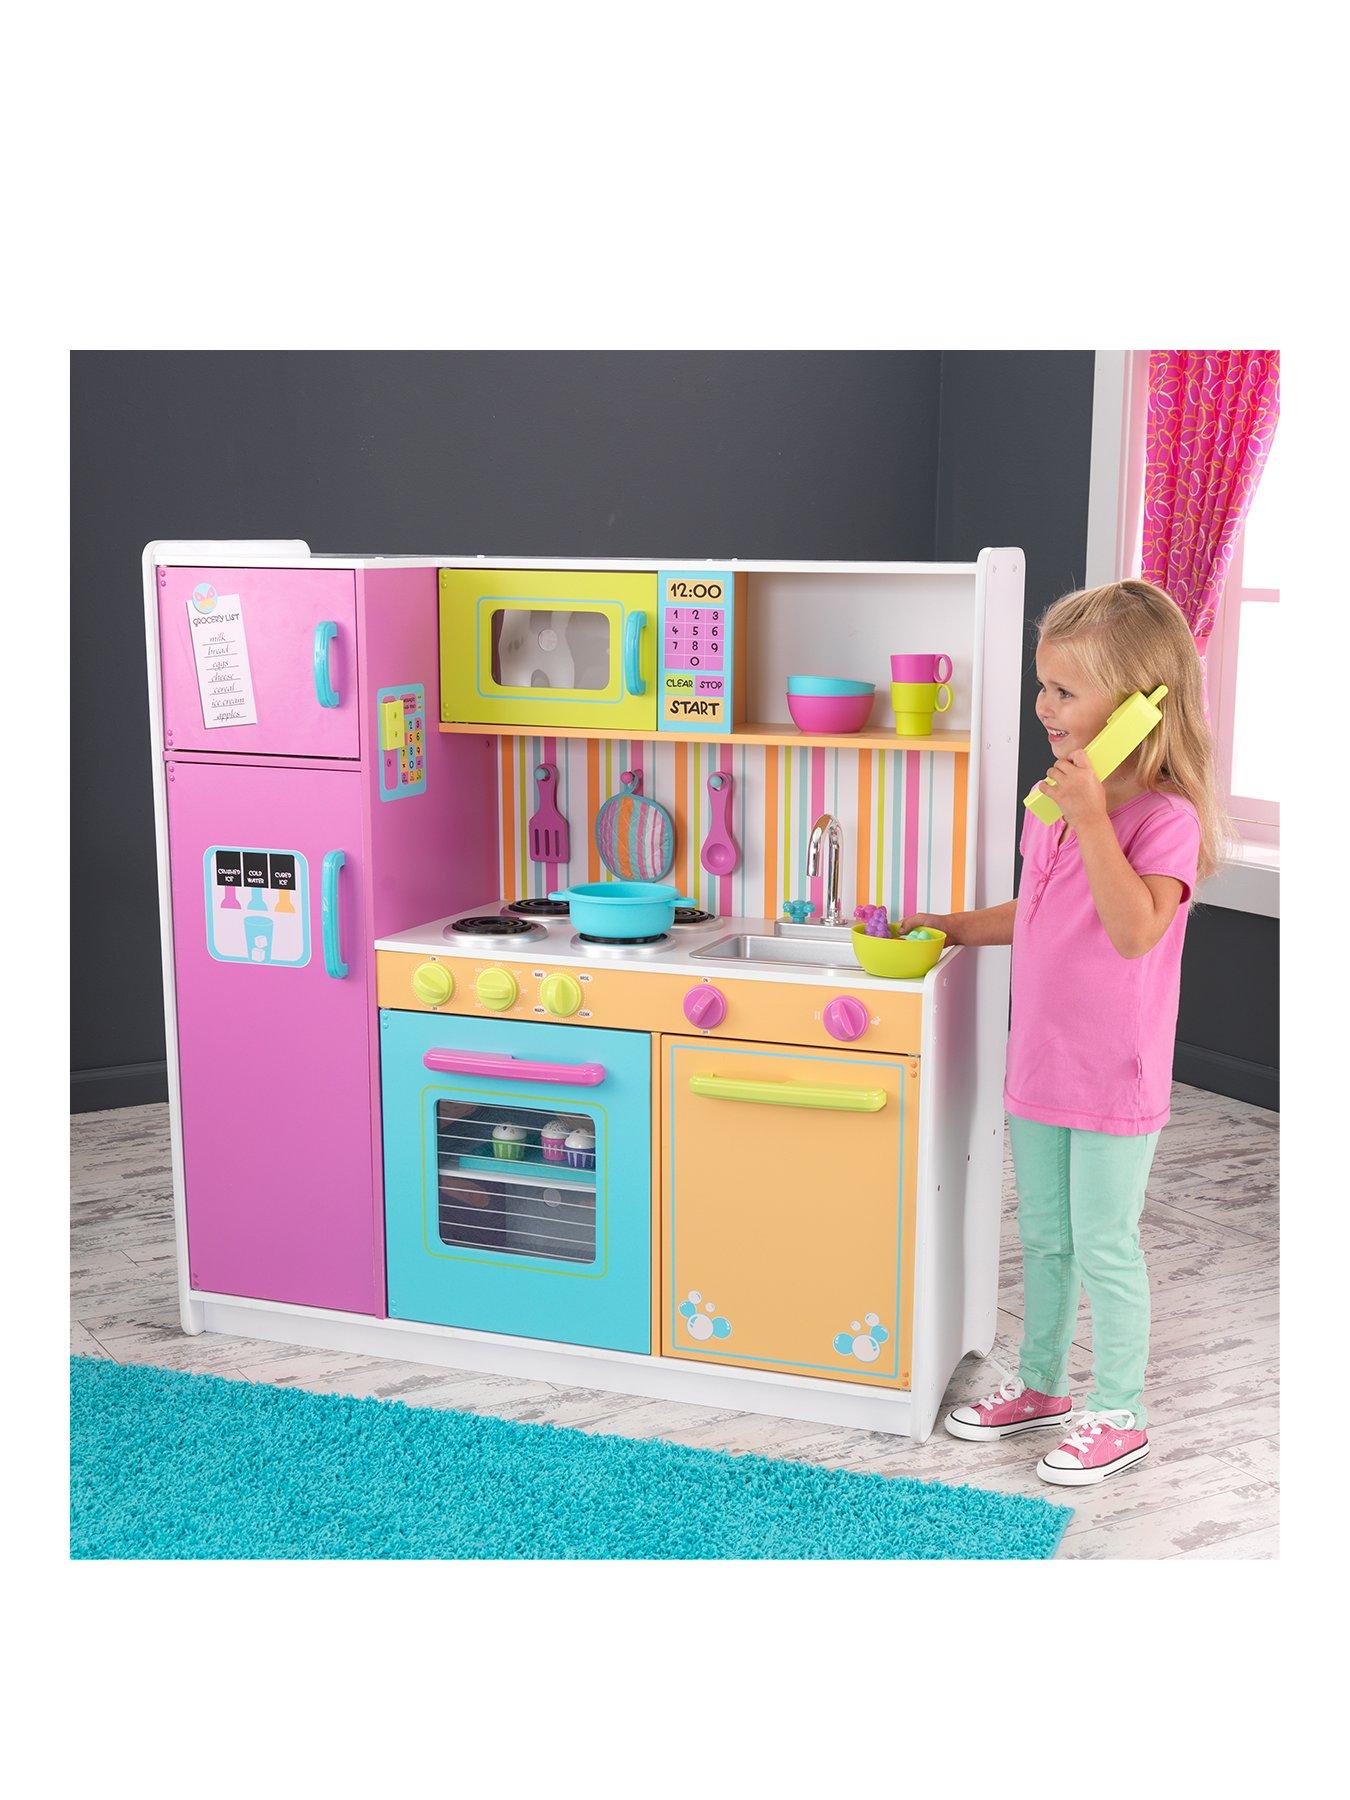 toy kitchen very